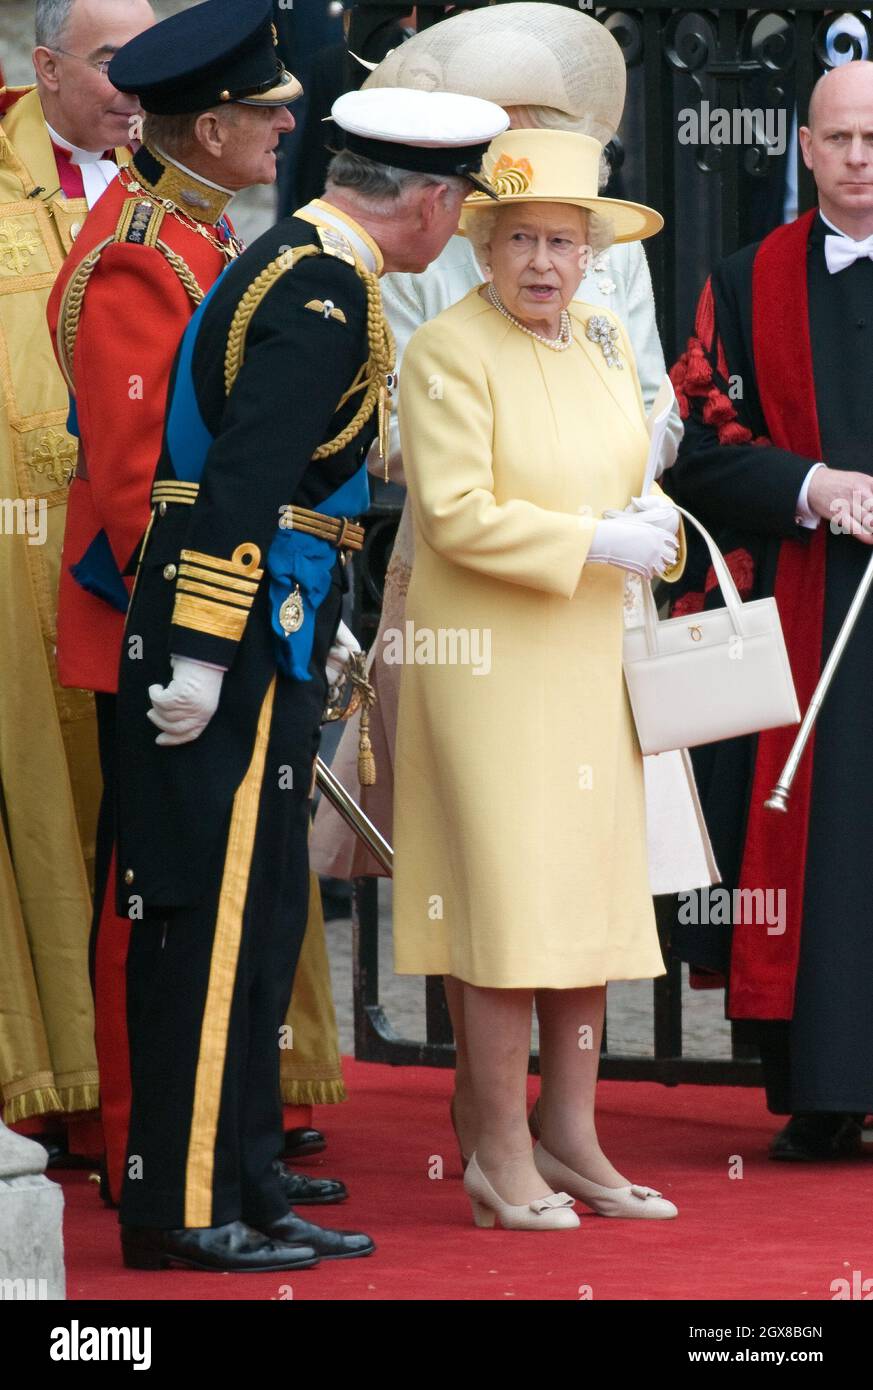 Le prince Charles, prince de Galles, Camilla, duchesse de Cornouailles, la reine Elizabeth ll et le prince Philip, duc d'Édimbourg partent après le mariage du prince William et de Catherine Middleton à l'abbaye de Westminster le 29 avril 2011. Banque D'Images